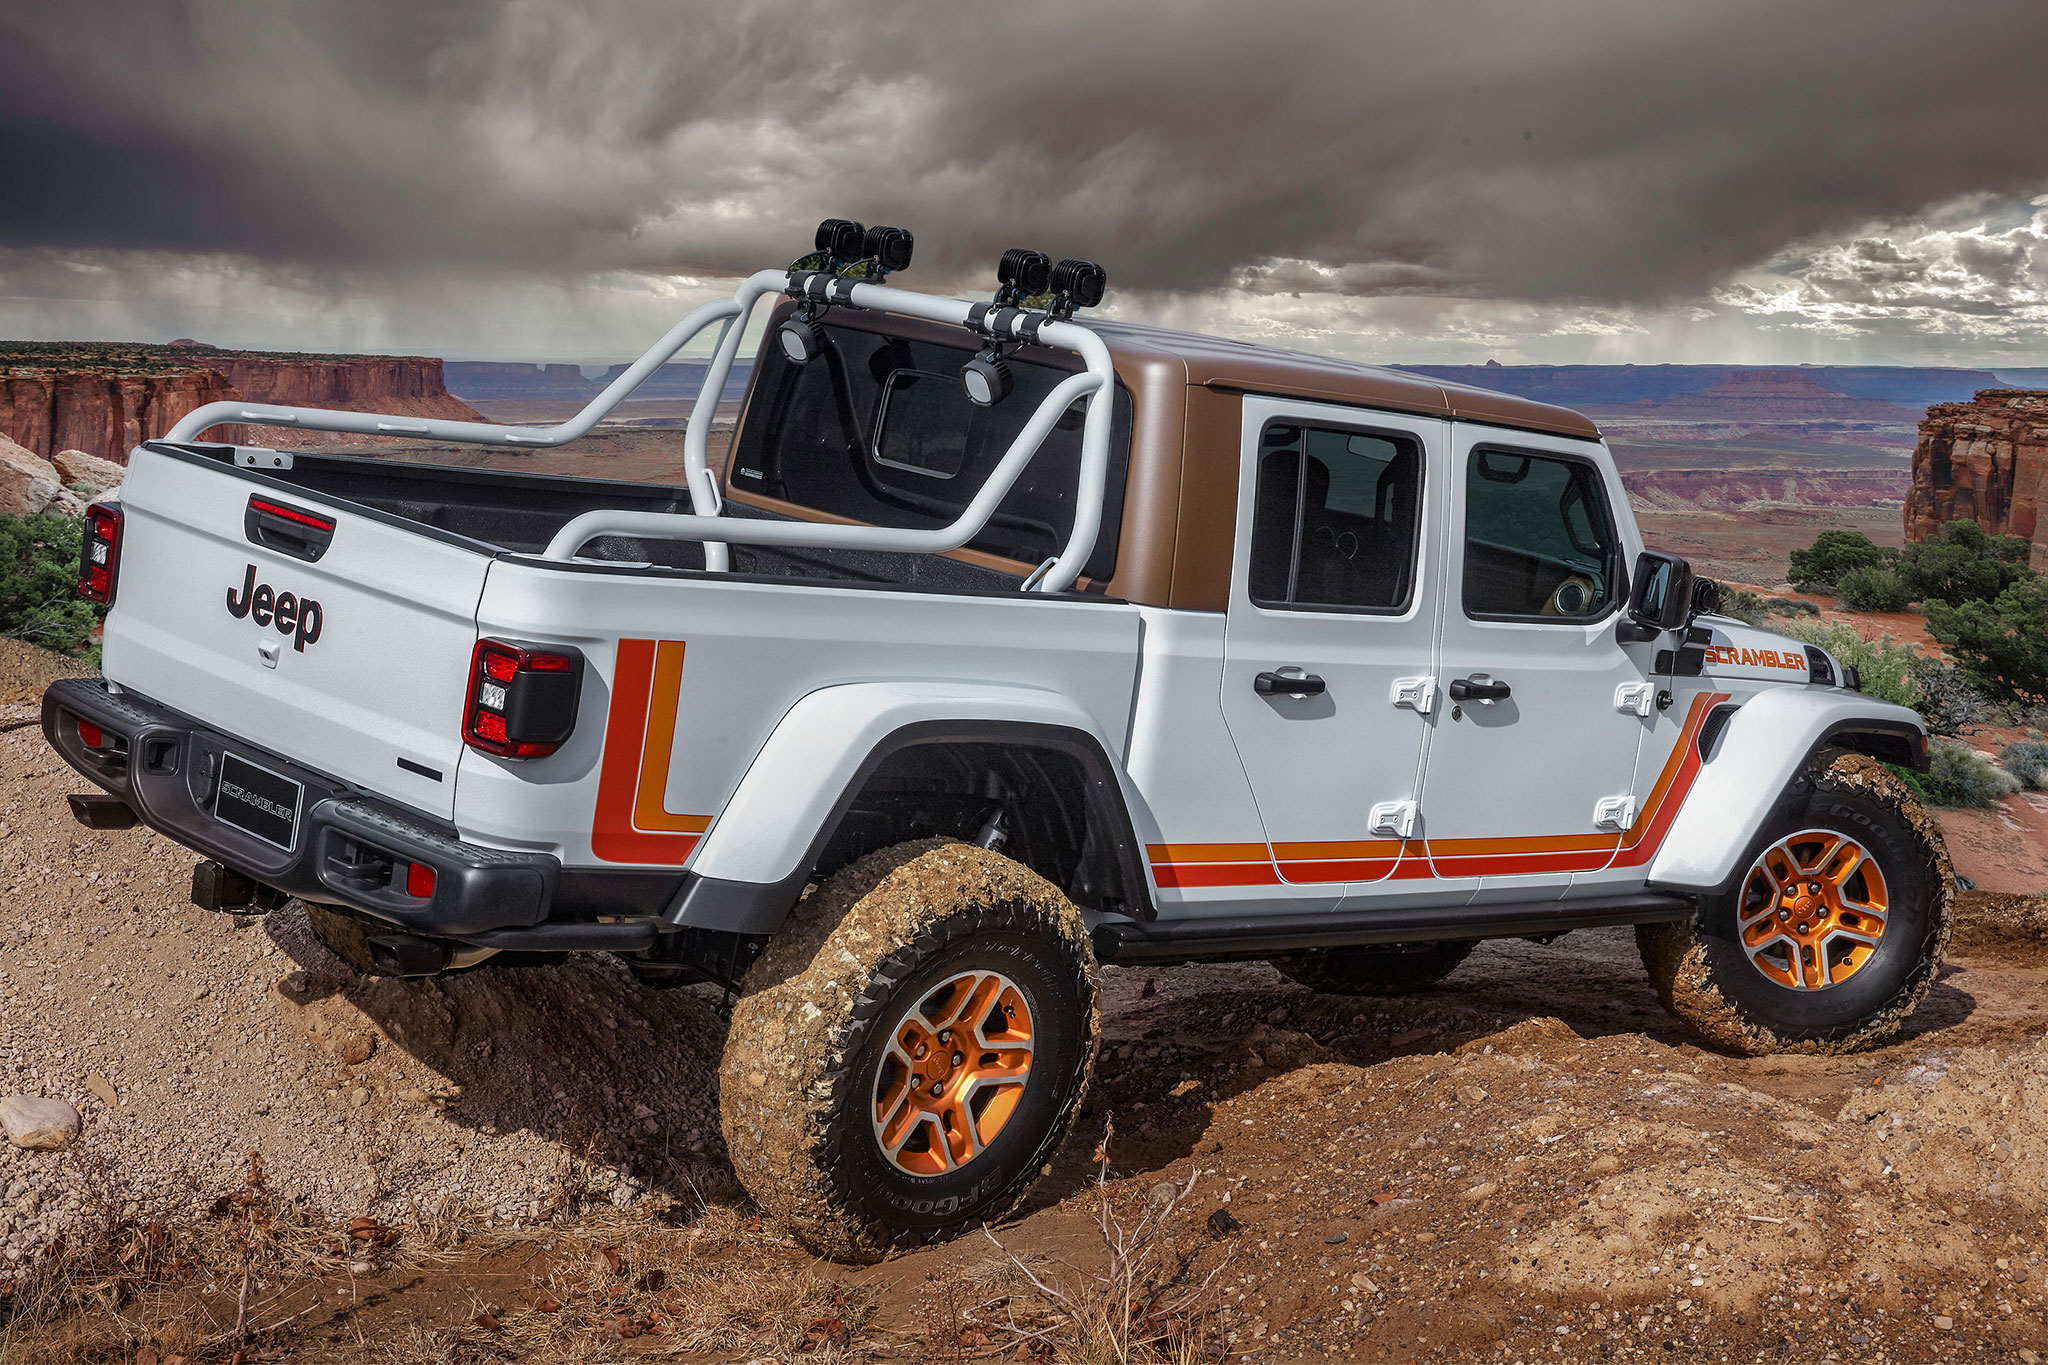 2019 Jeep JT Scrambler jantes 17 pouces pneus en 35 et rehausse de 2 pouces - Moab Easter Jeep Safari.